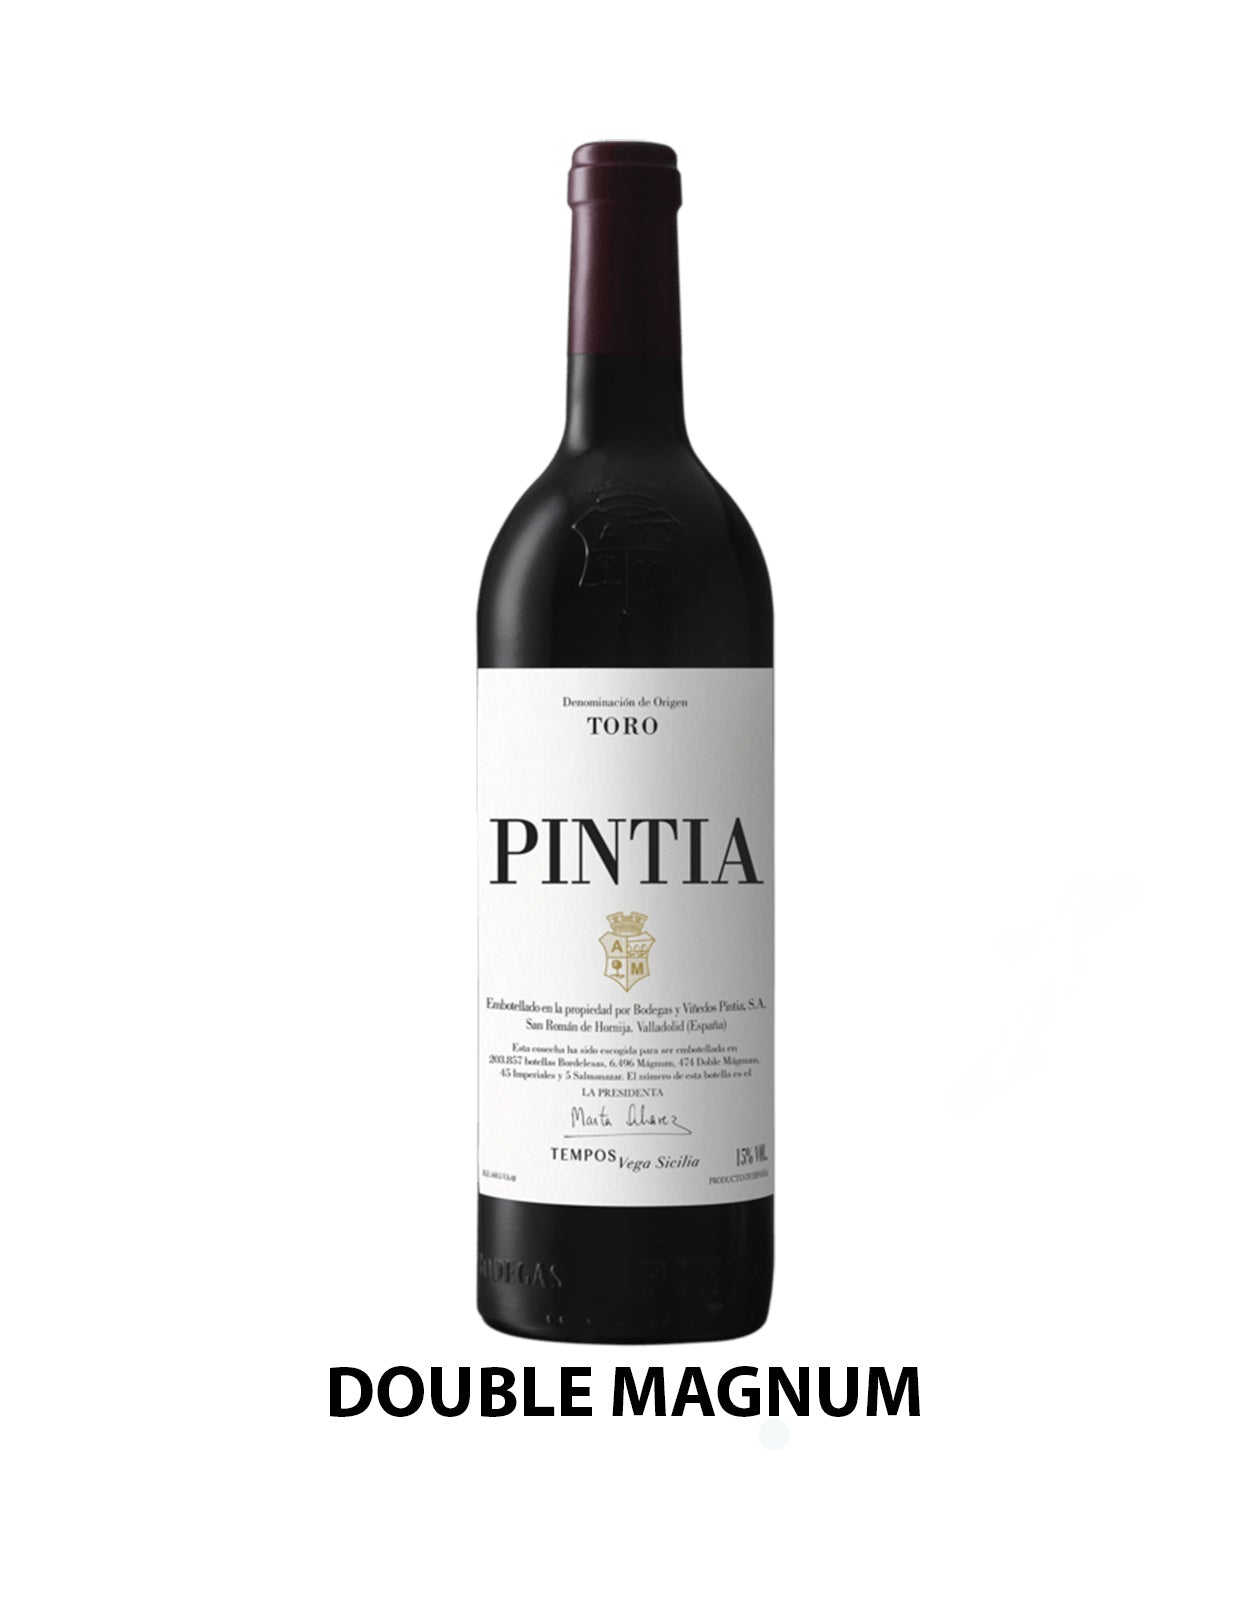 Vega Sicilia Pintia 2017 - 3 Litre Bottle